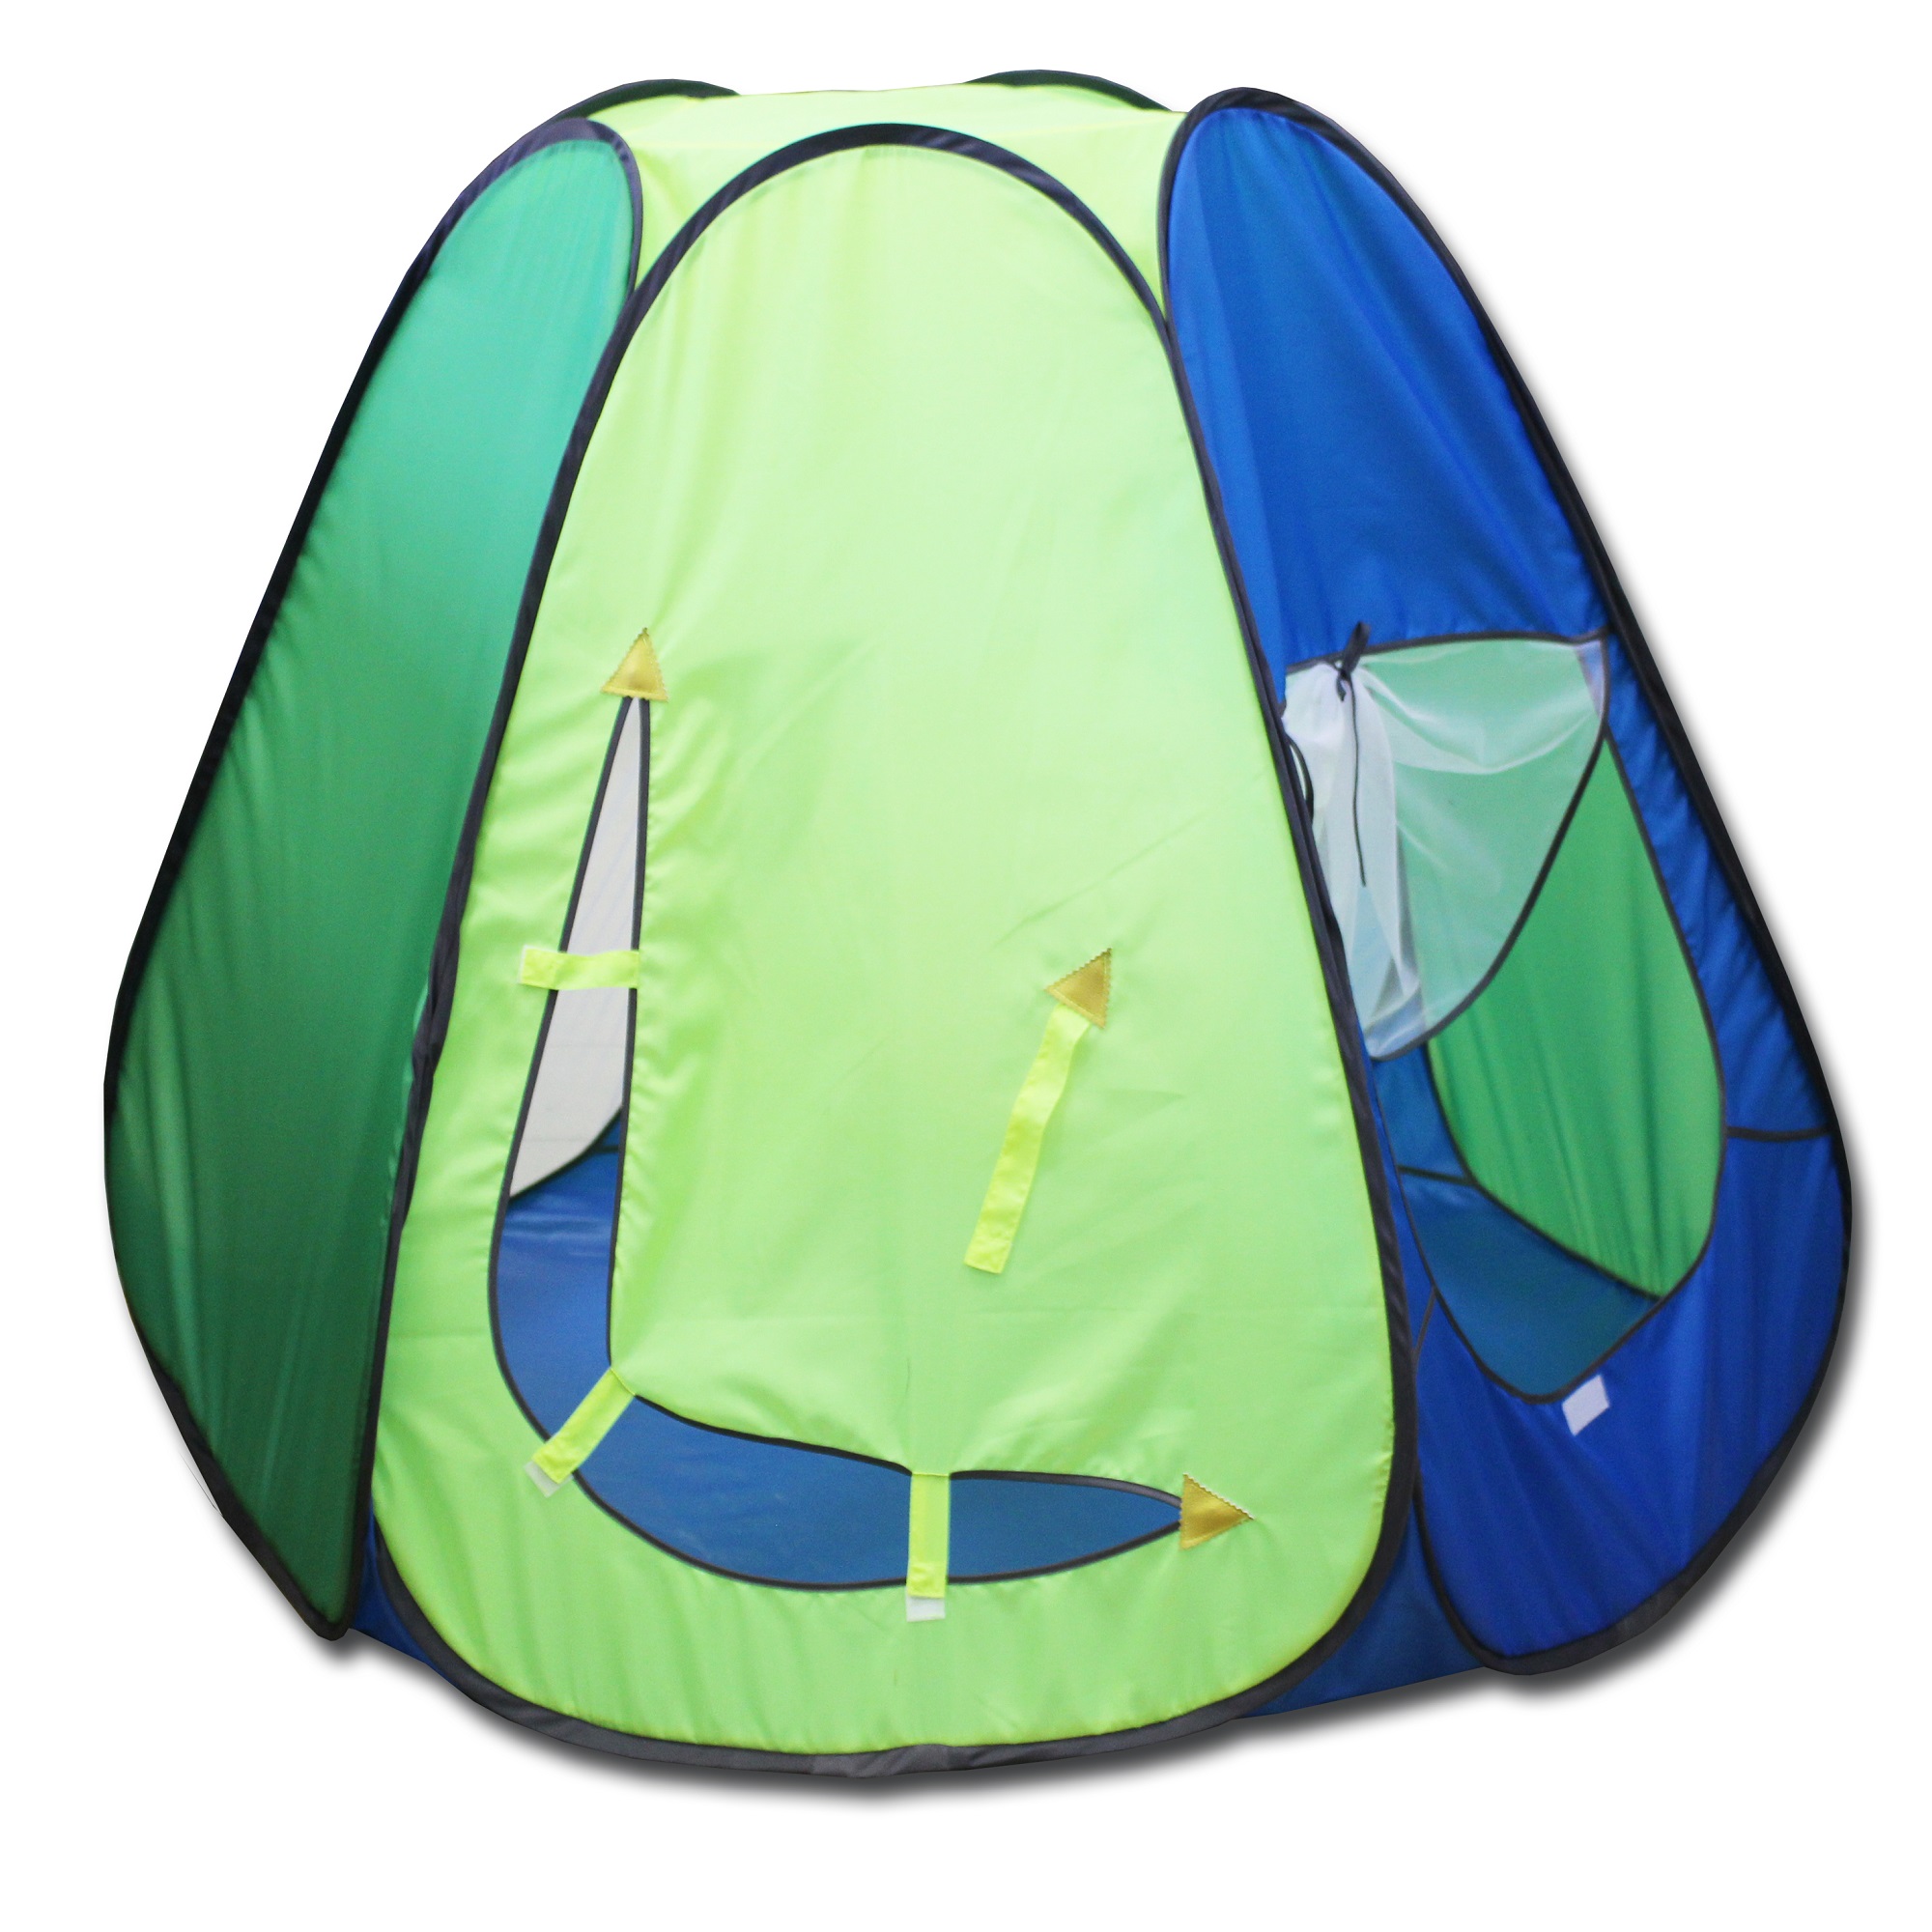 Игровая палатка Belon familia шестигранная цвет голубой яркий/зеленое яблоко/лимон/голубой 120х120х110 см - фото 1